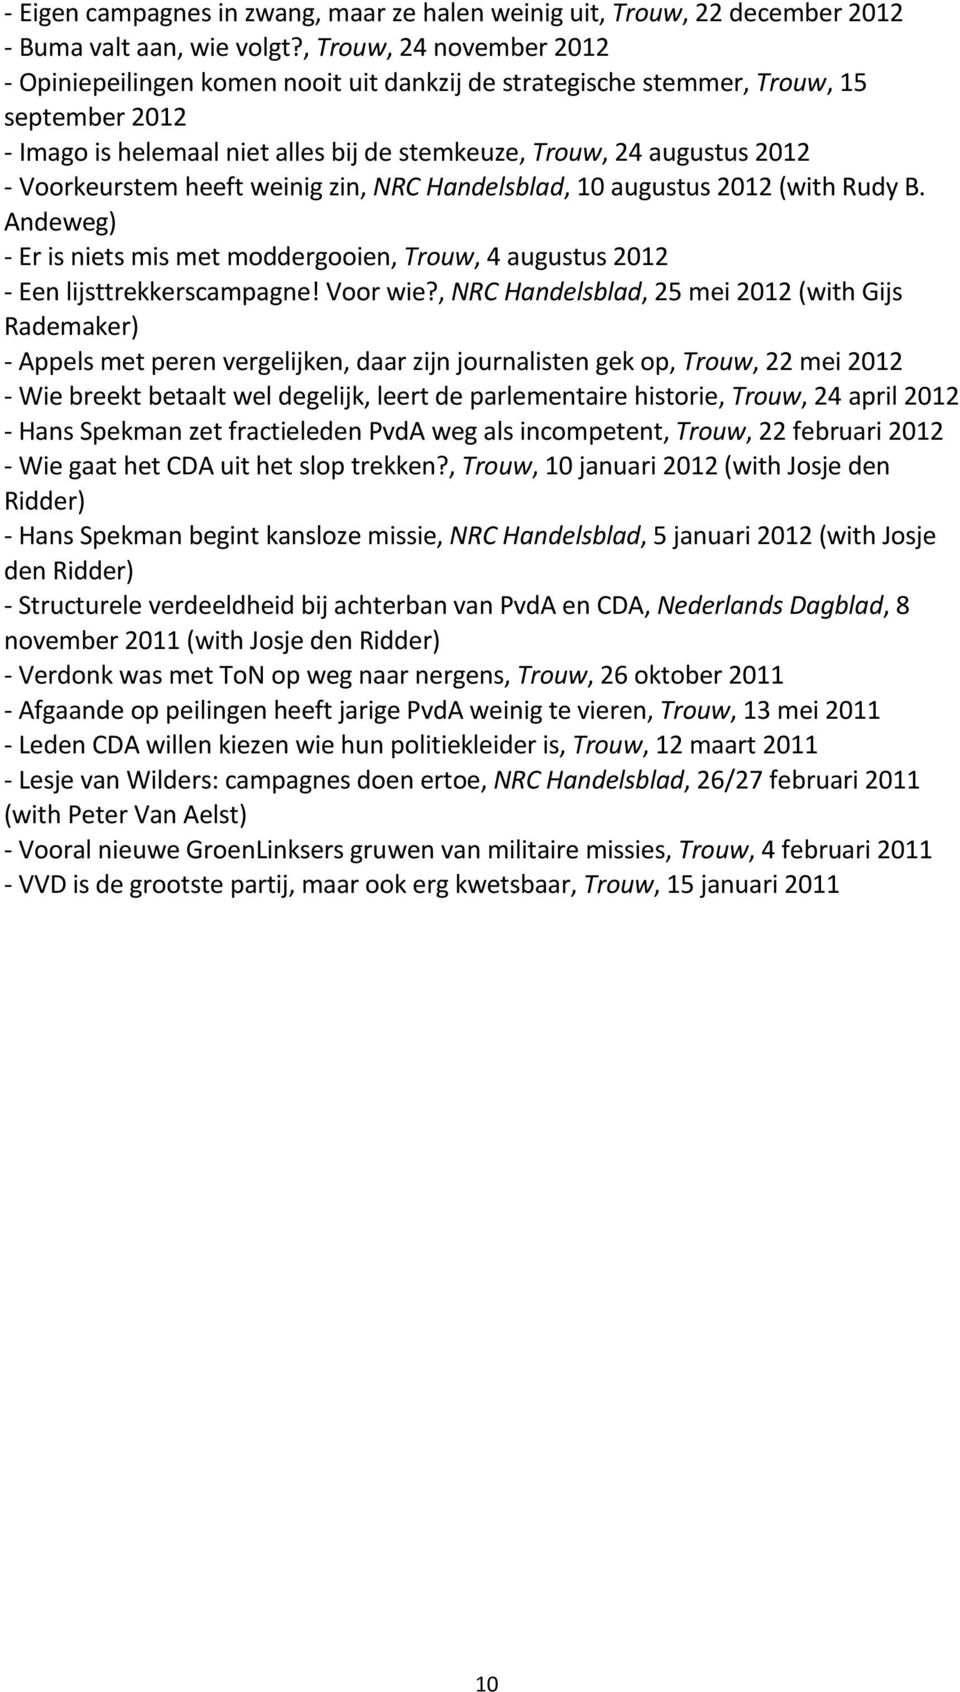 Voorkeurstem heeft weinig zin, NRC Handelsblad, 10 augustus 2012 (with Rudy B. Andeweg) - Er is niets mis met moddergooien, Trouw, 4 augustus 2012 - Een lijsttrekkerscampagne! Voor wie?